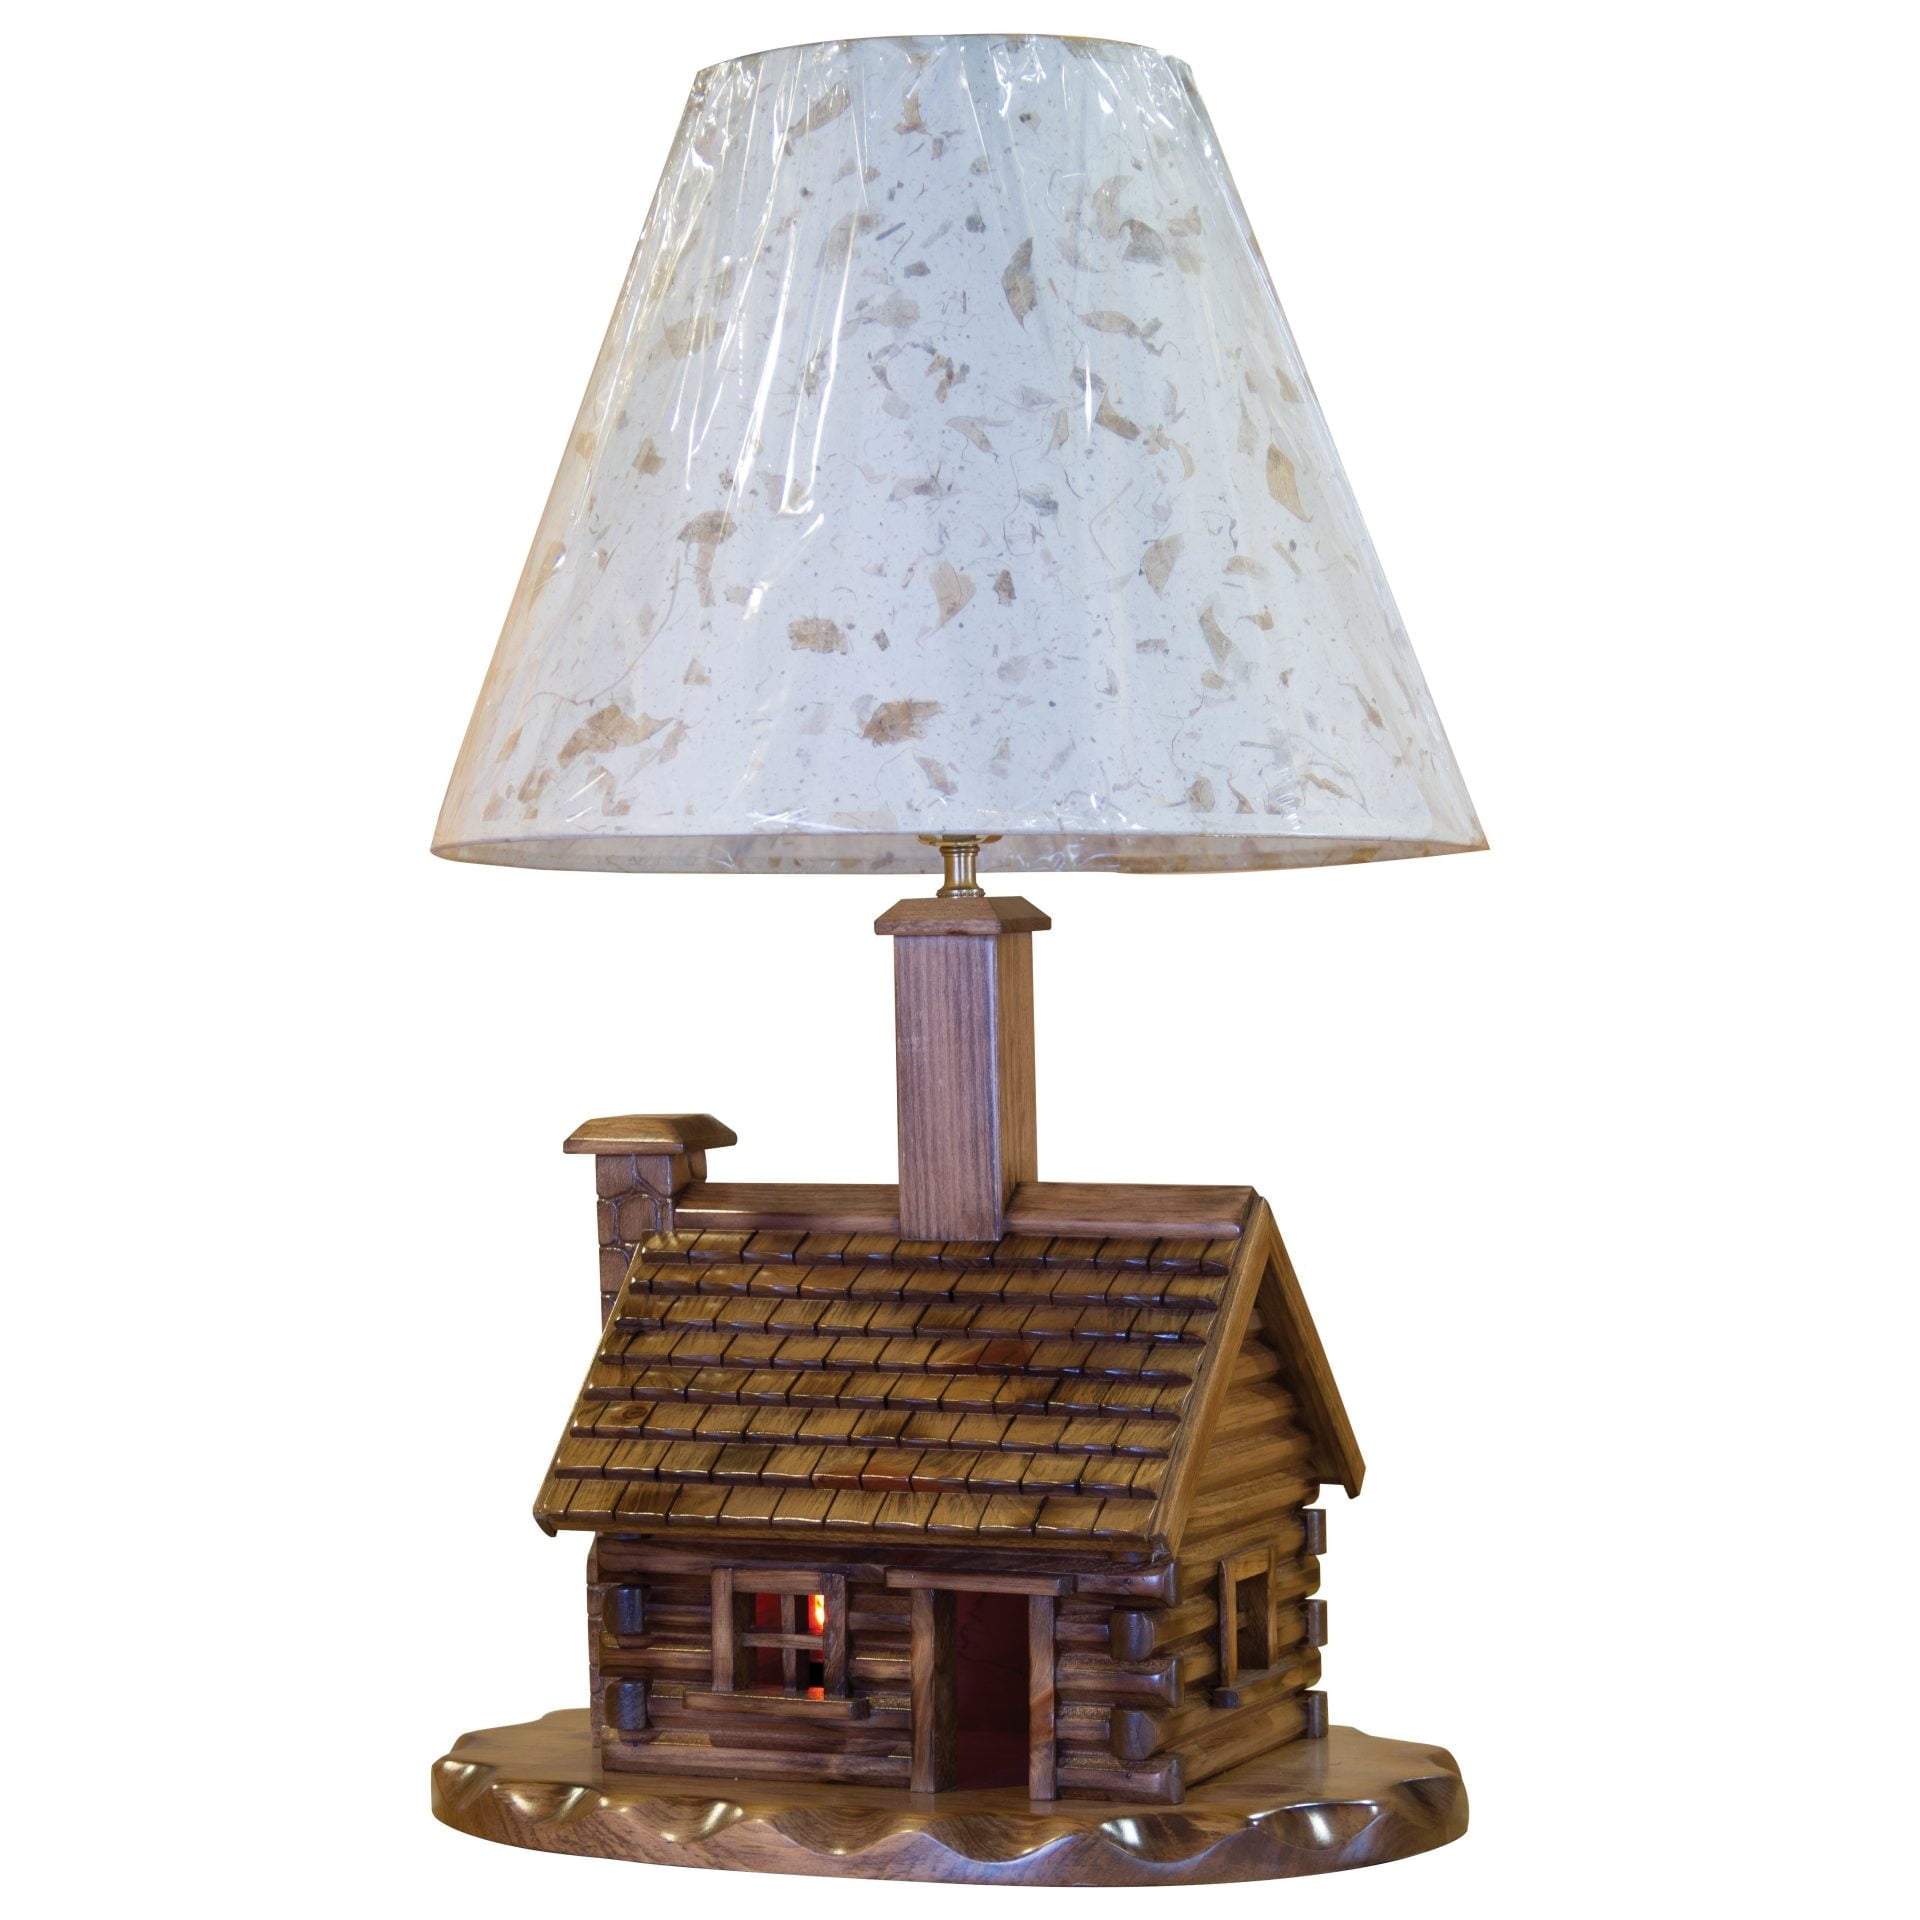 Rustic Pine Log Cabin Lamp